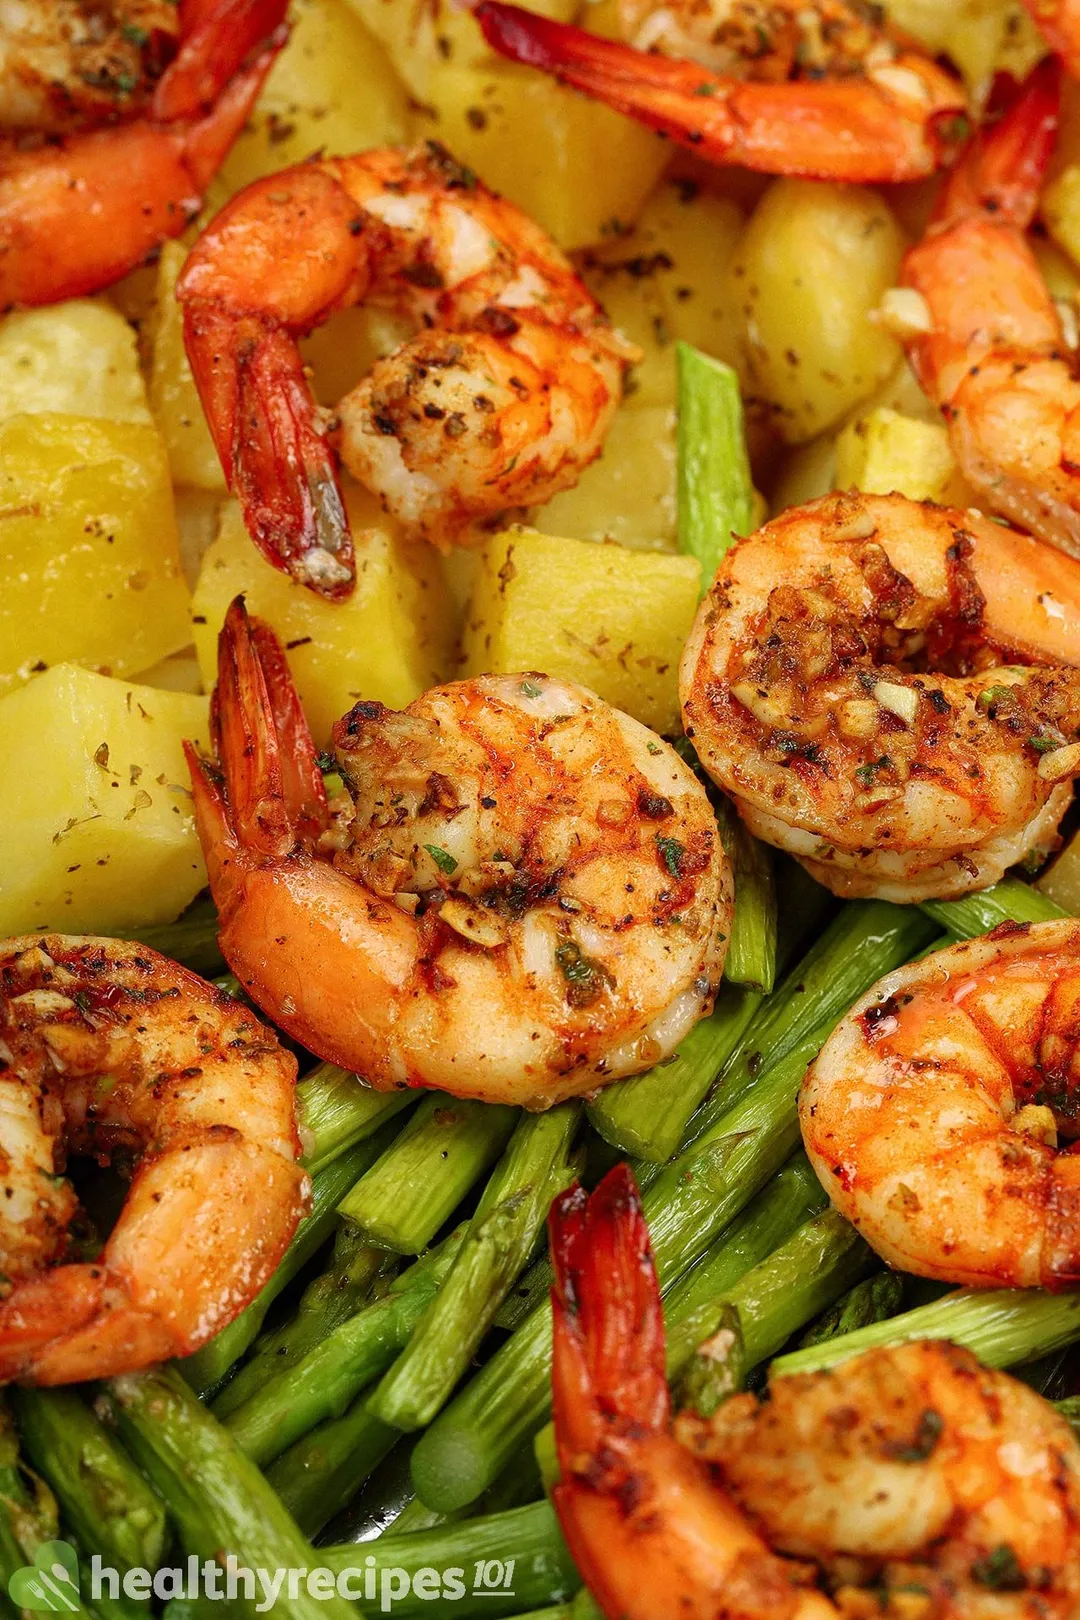 How to Season baked shrimp recipes